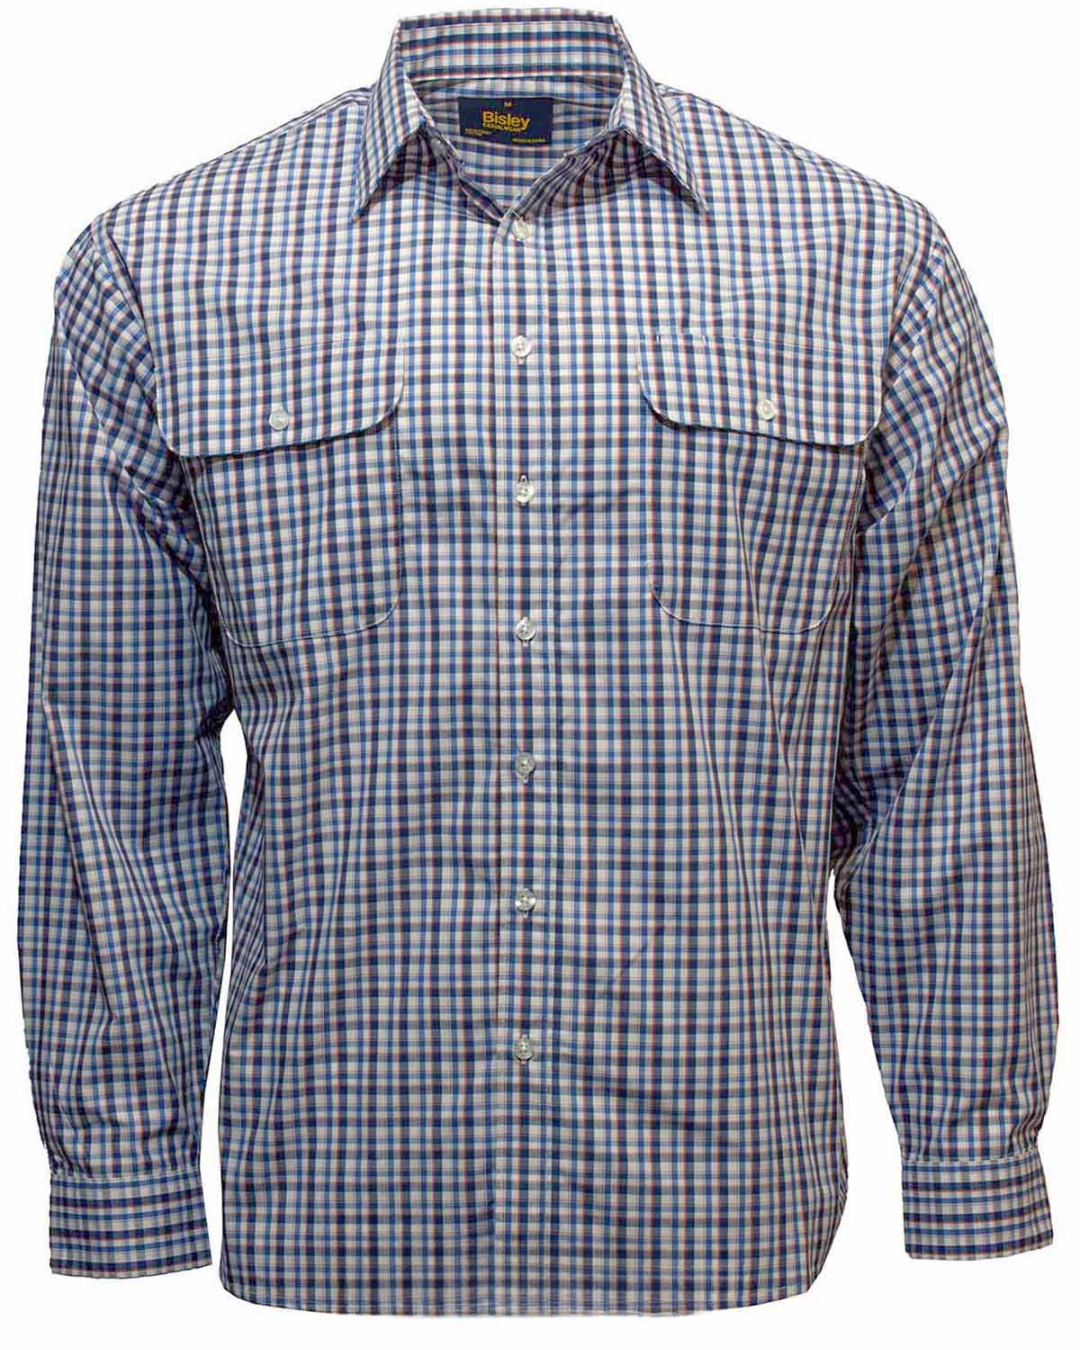 Bisley Mens Long Sleeve Small Check Shirt (Blue)